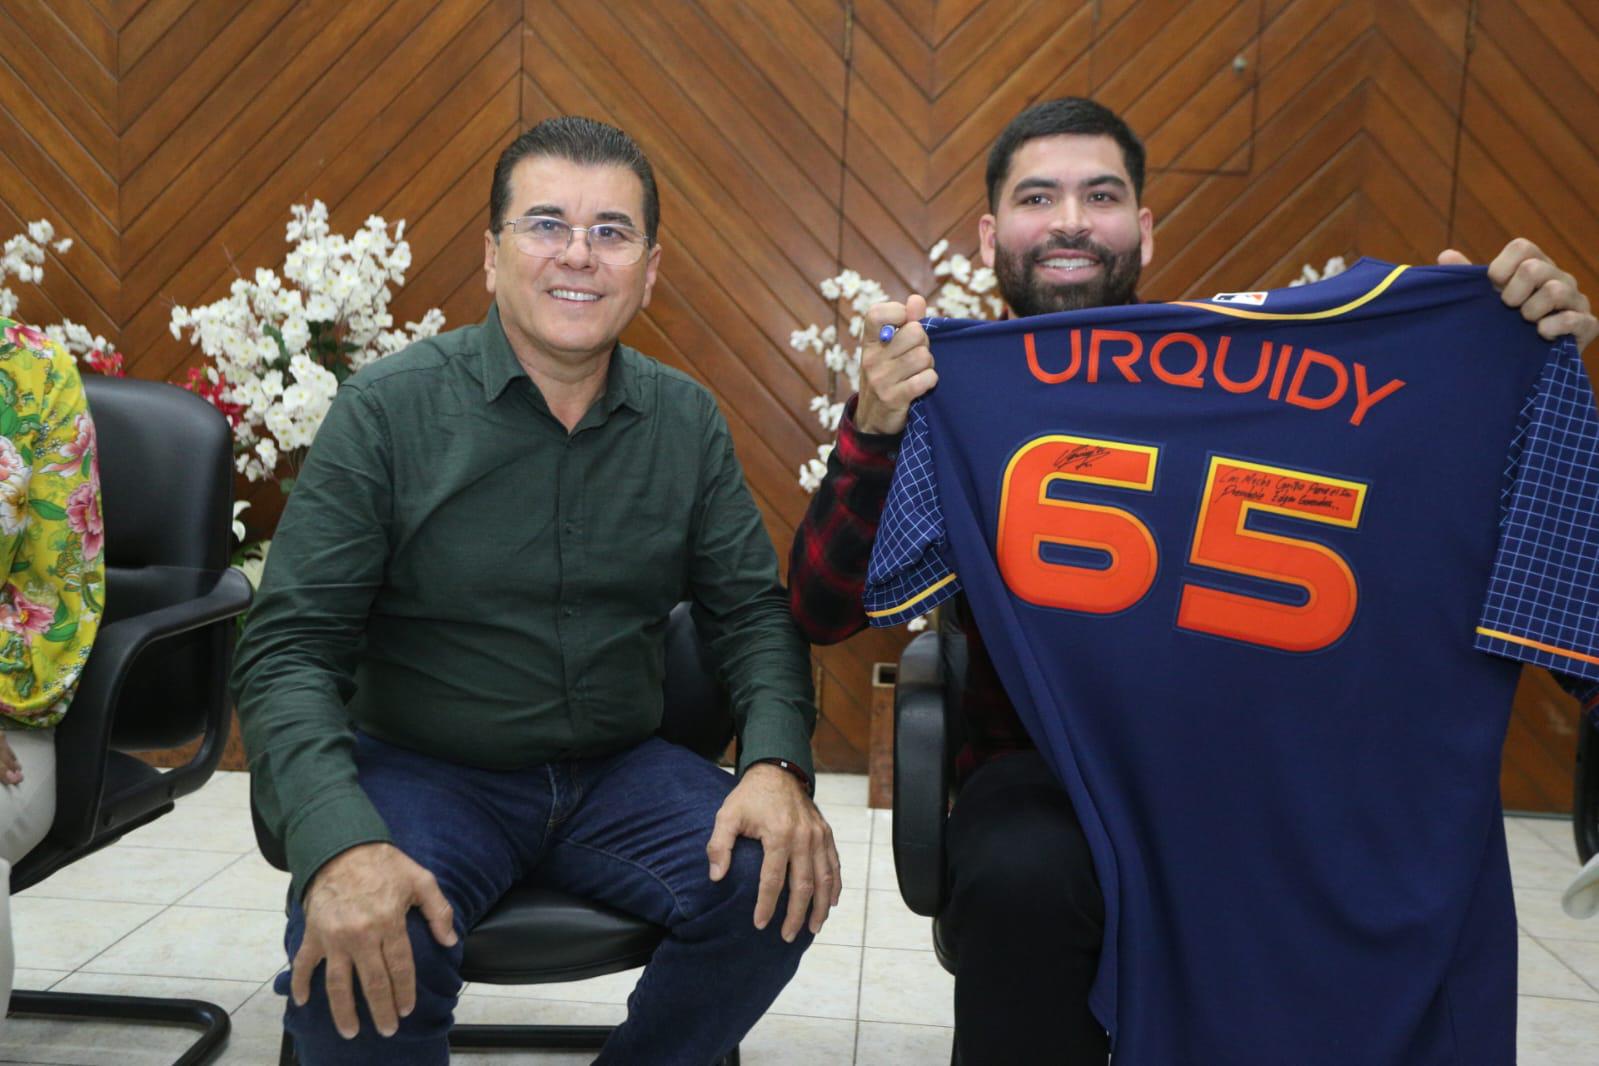 $!Trayectoria de José Luis Urquidy es reconocida por Ayuntamiento de Mazatlán